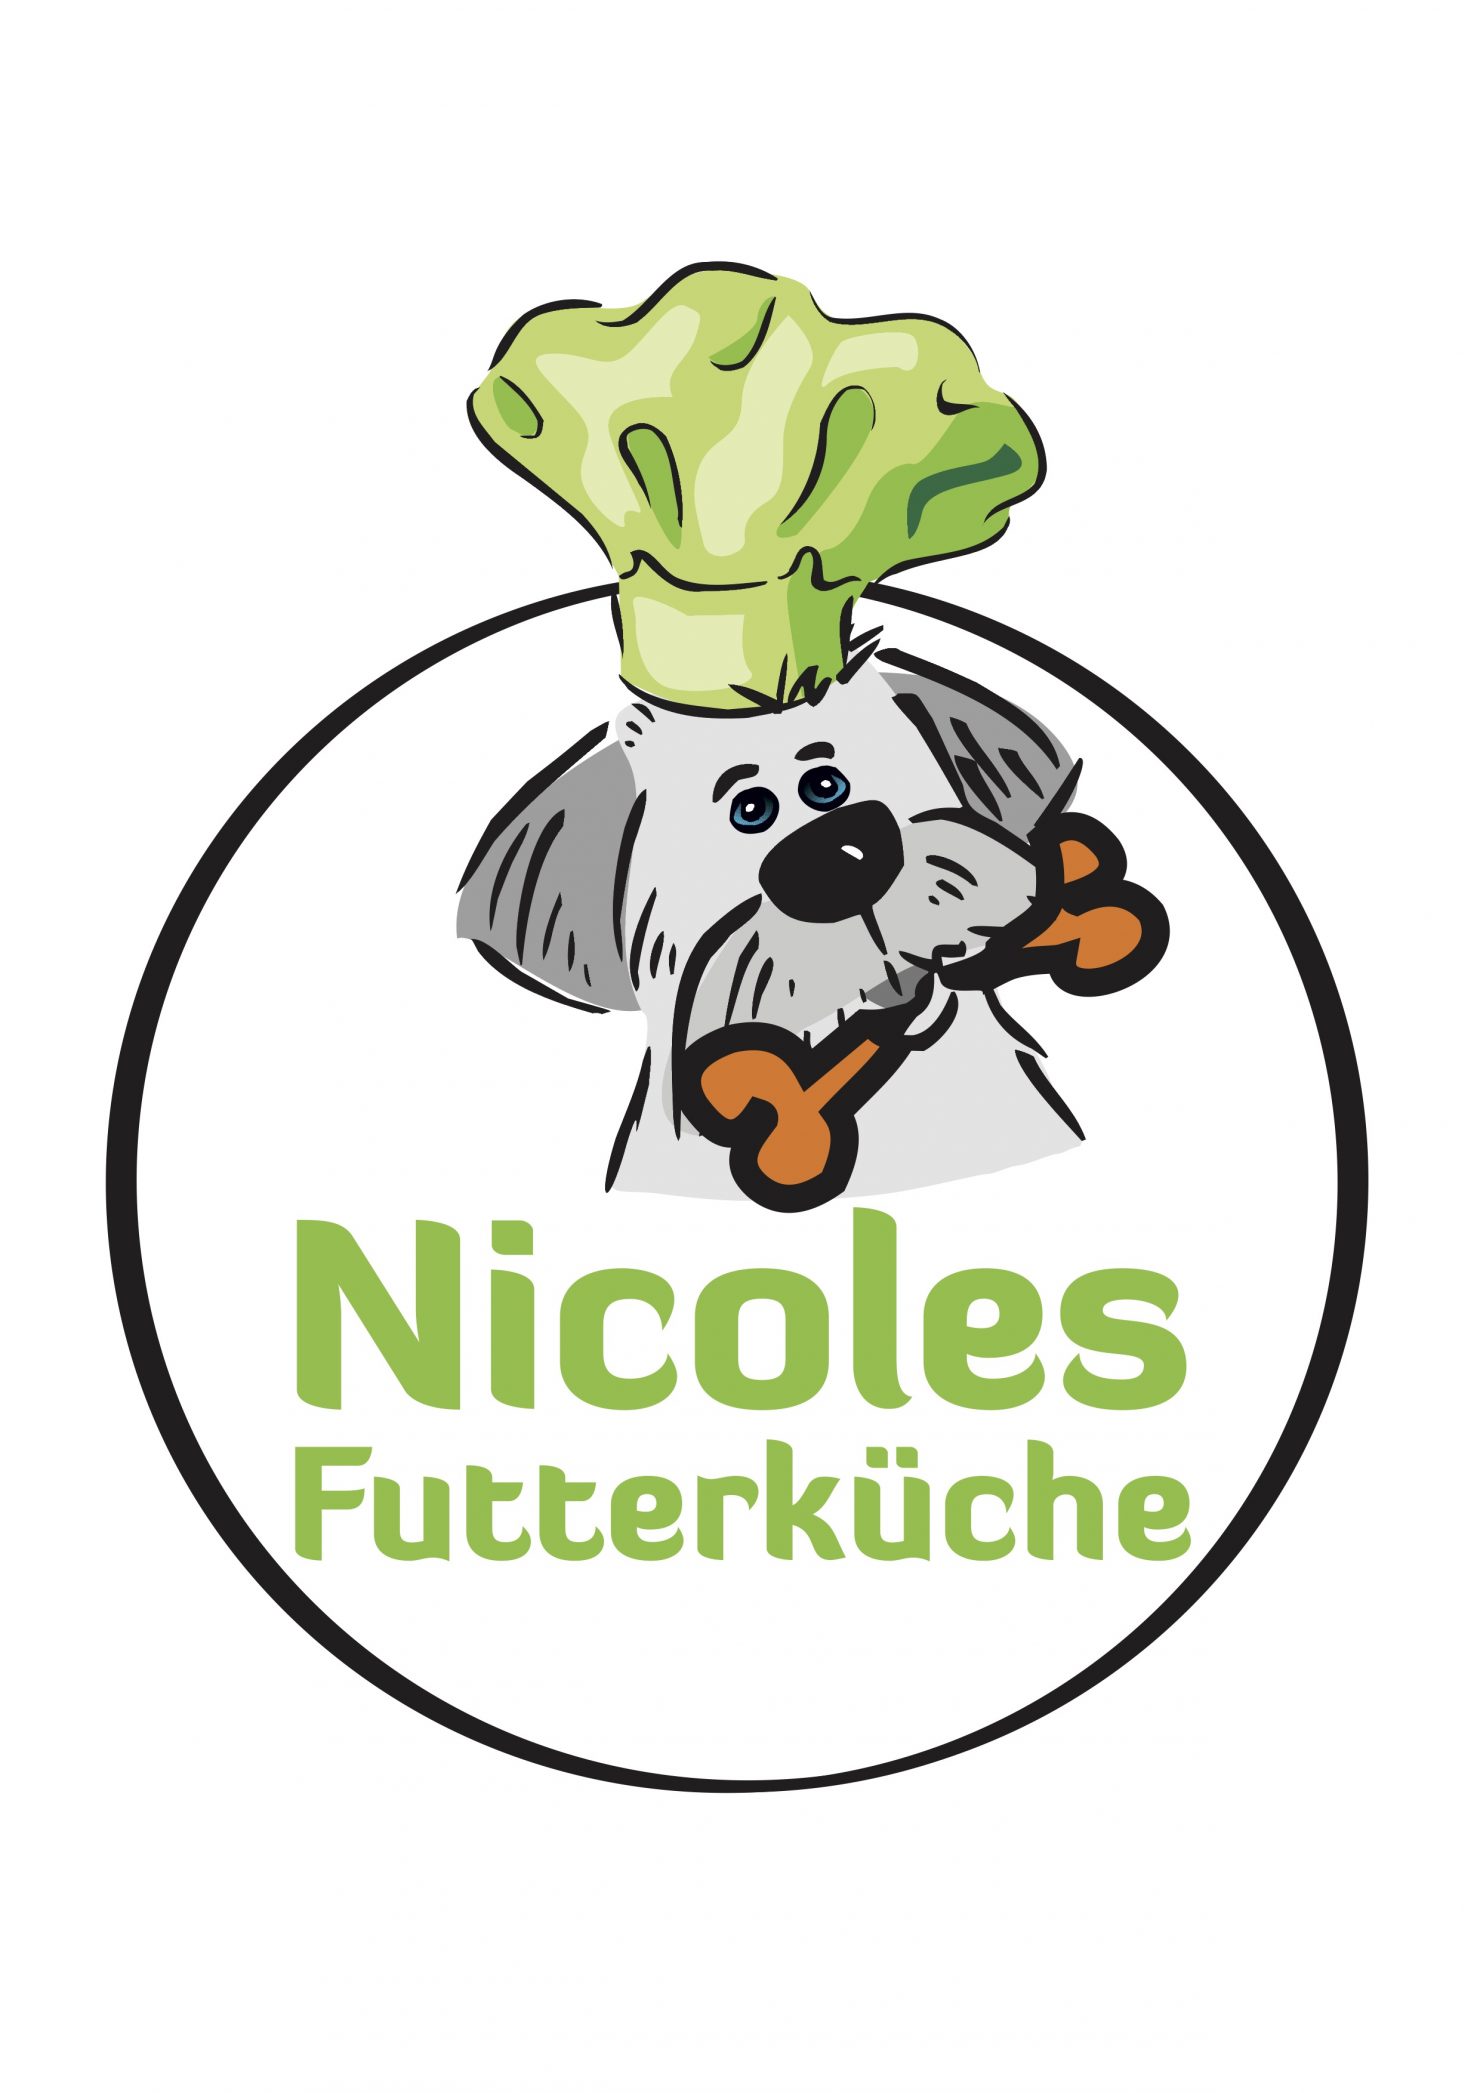 Nicoles Futterküche